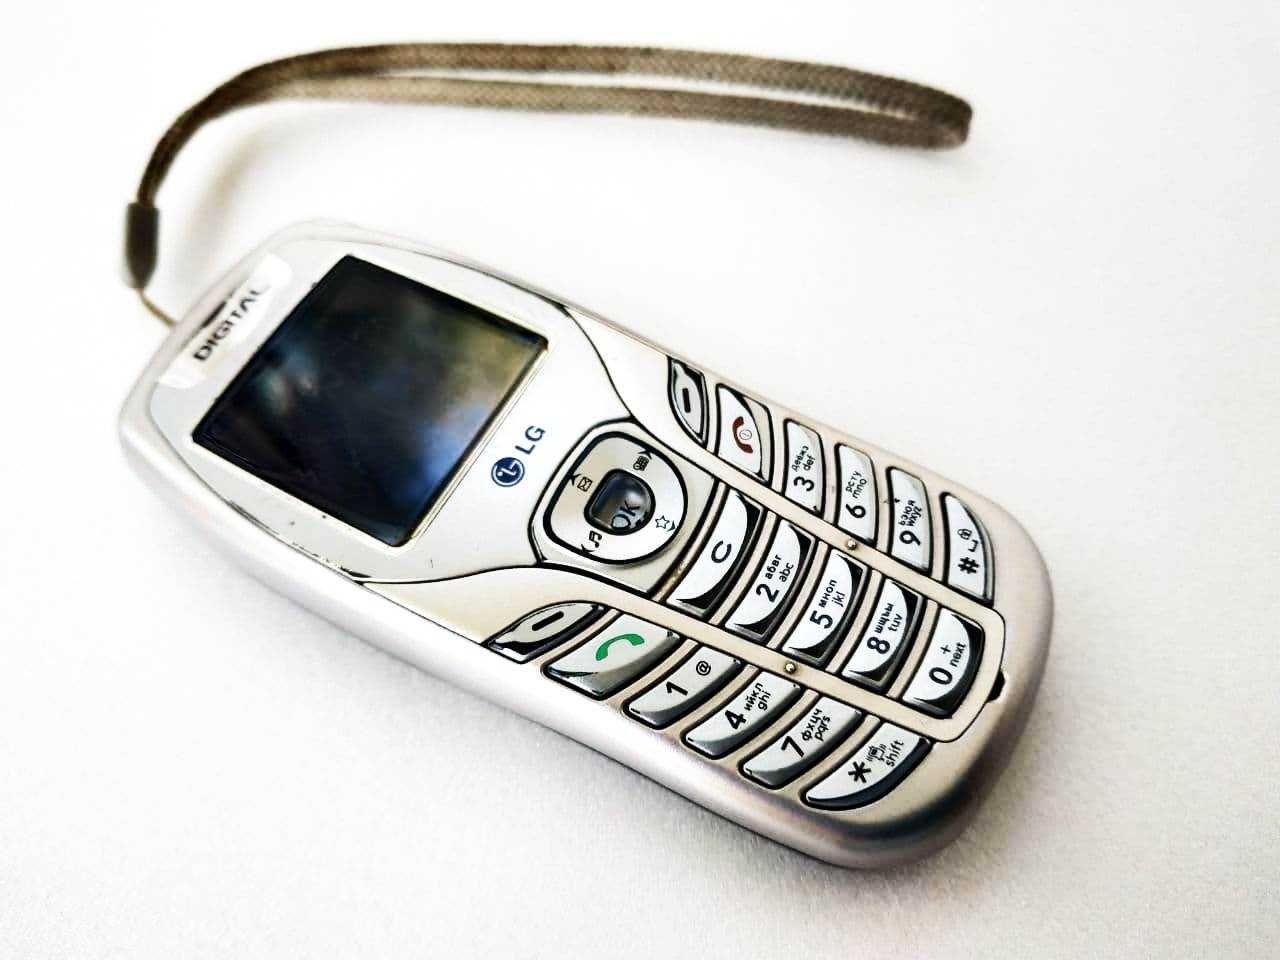 Мобильный телефон LG TD636 стандарта CDMA